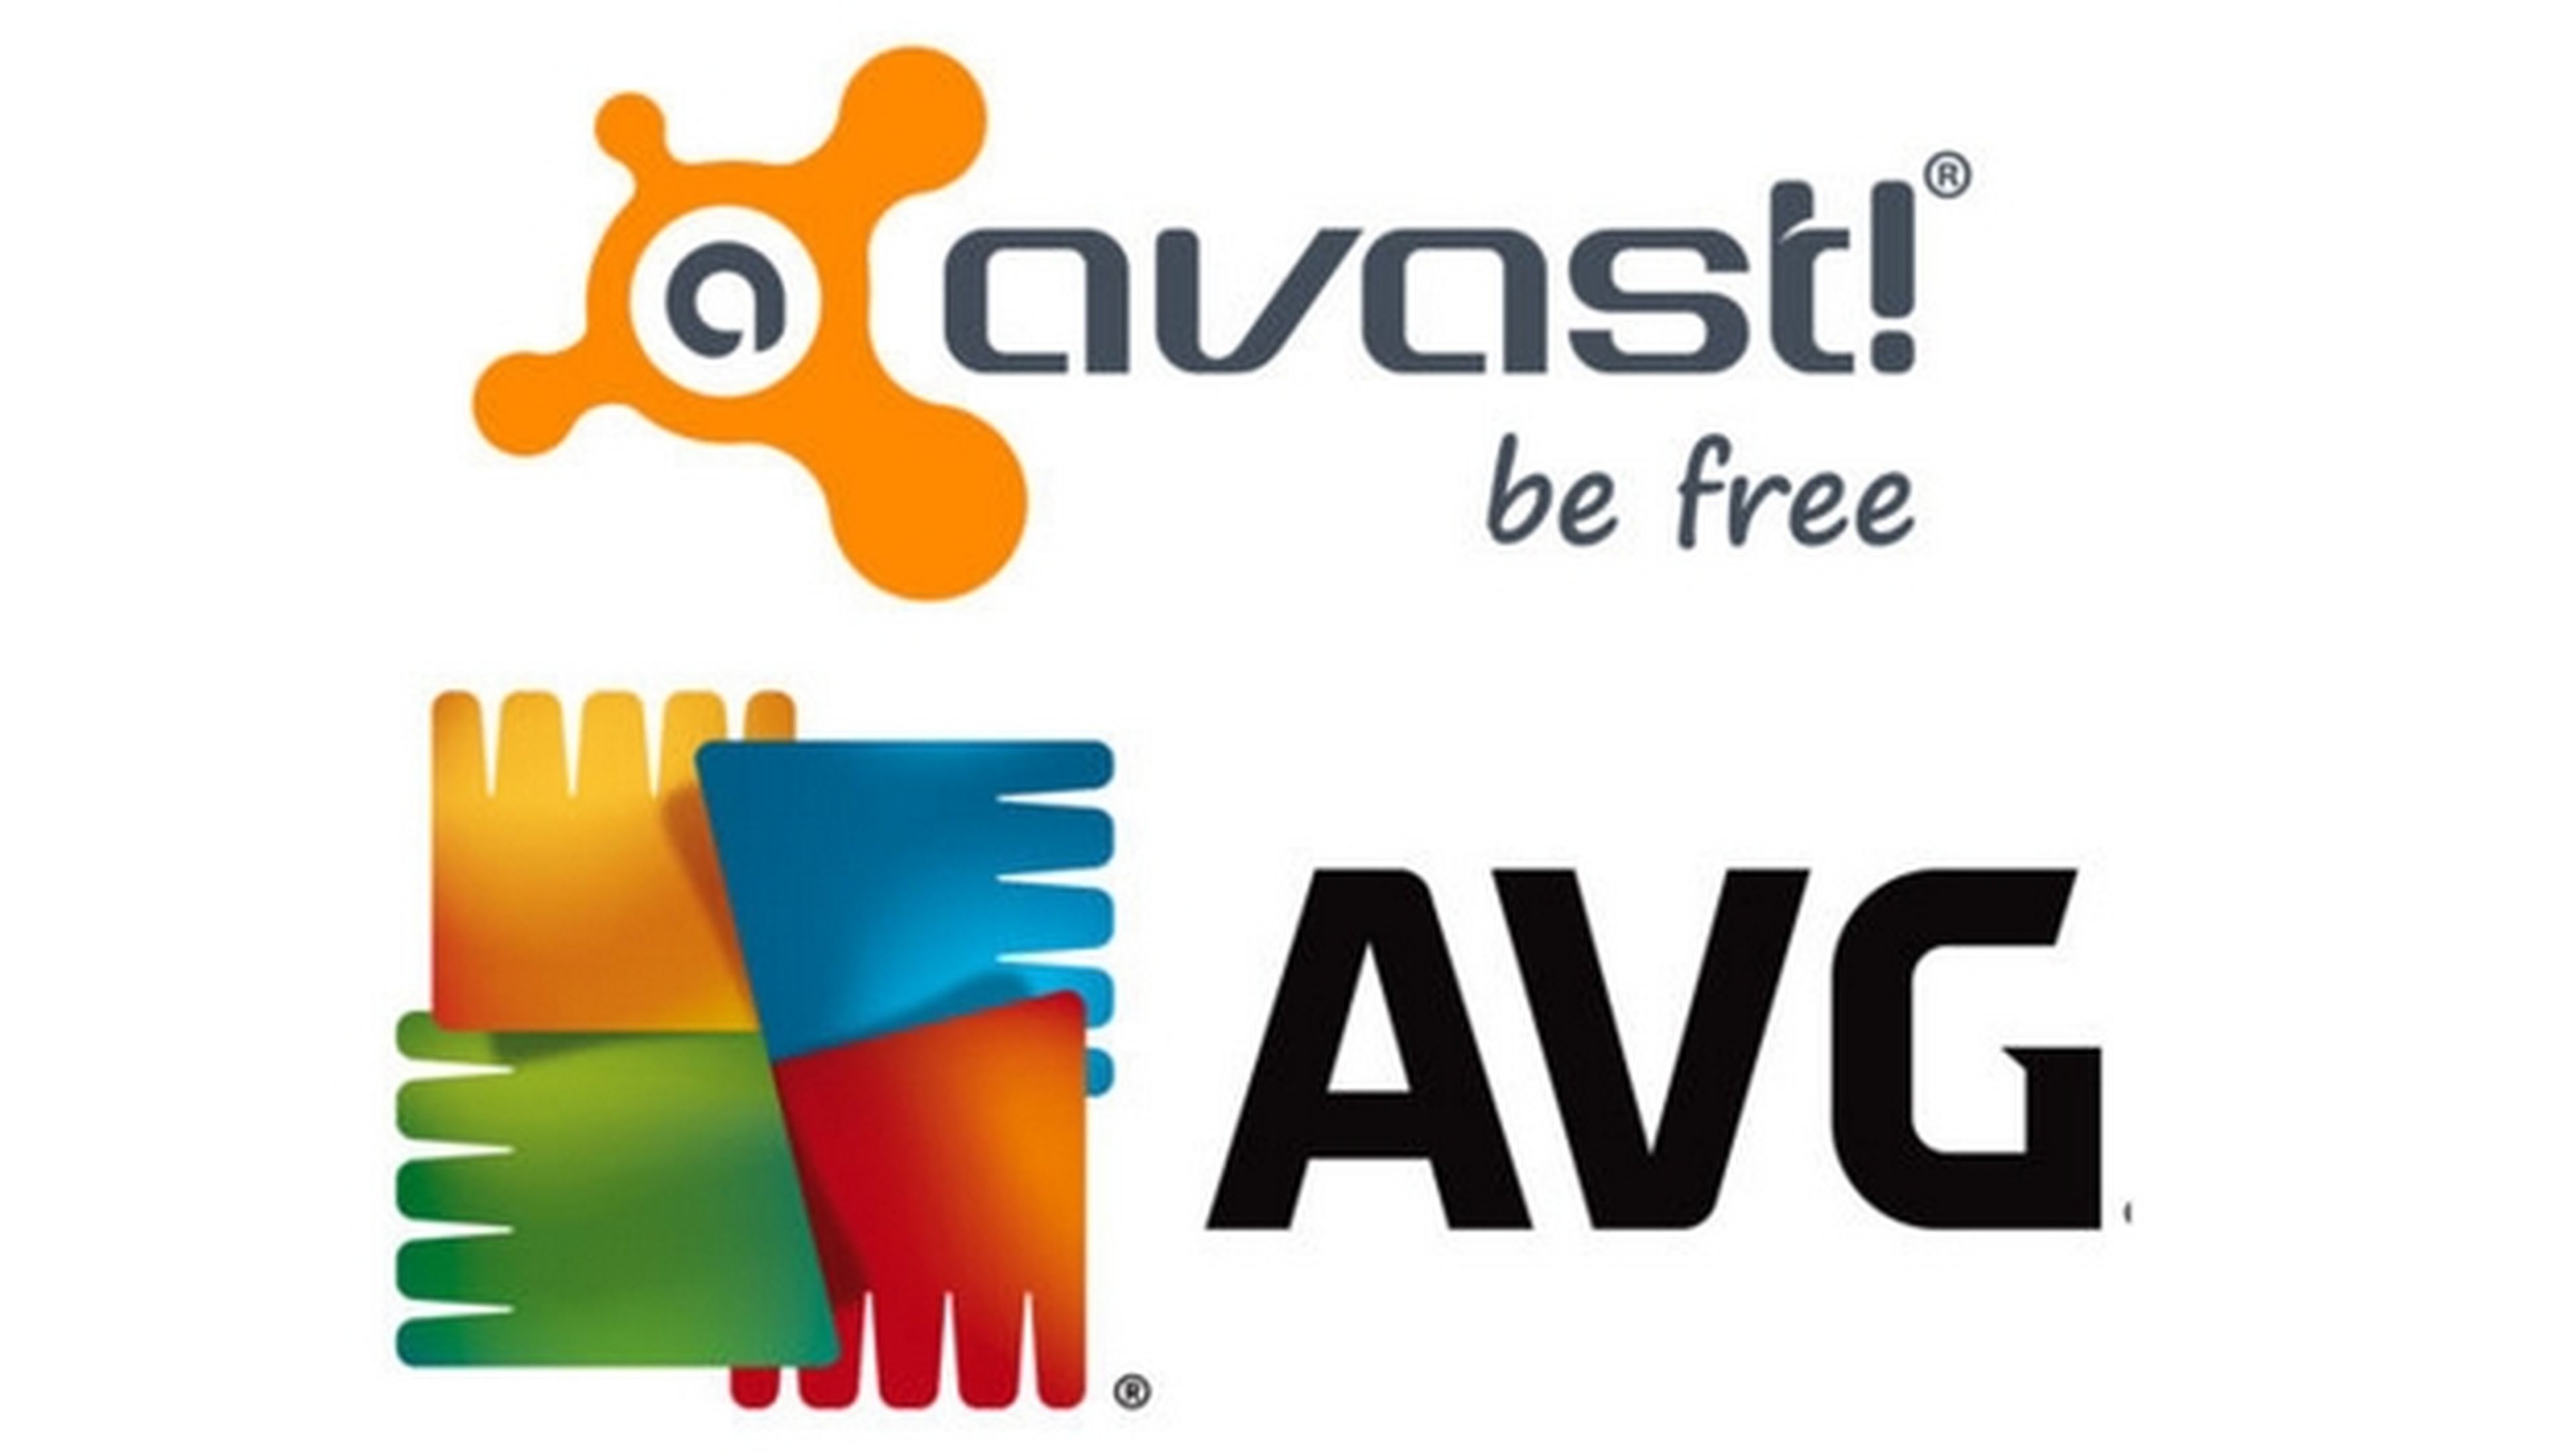 Fusión de antivirus gratuitos, Avast compra AVG por 1300 millones